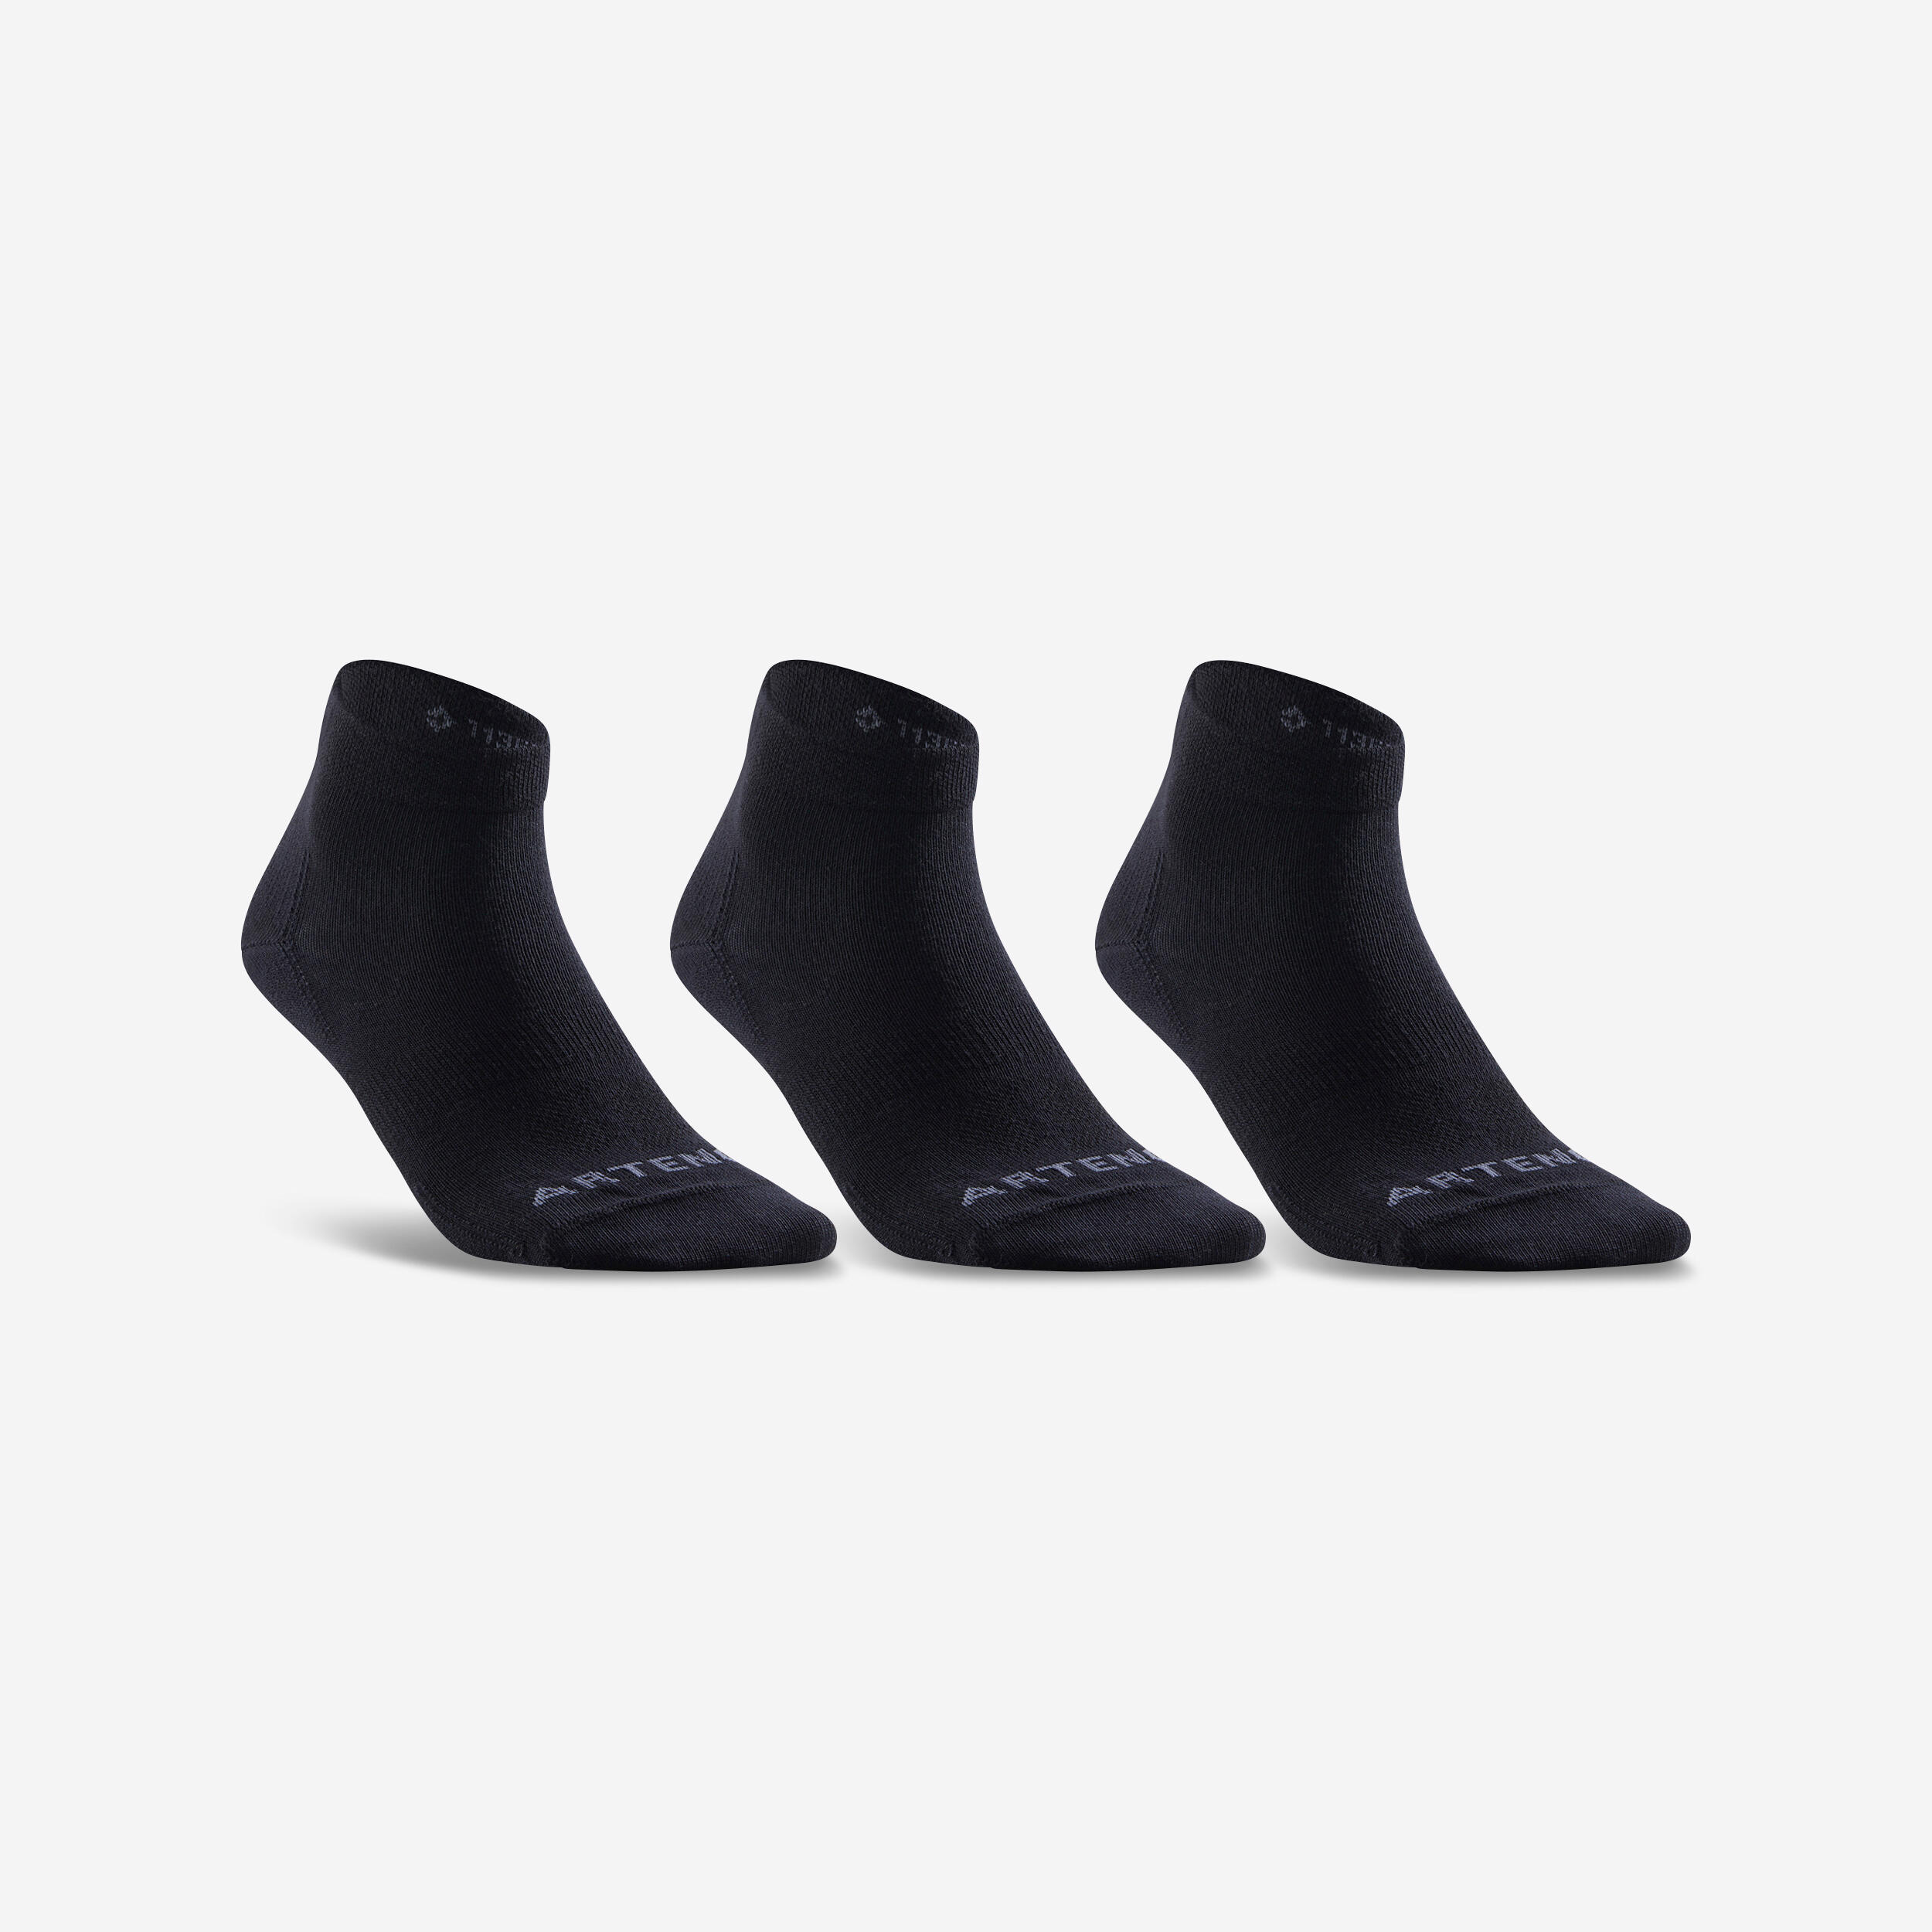 krautwear® Calcetines hasta la rodilla con 3 rayas blanco y negro Talla única 